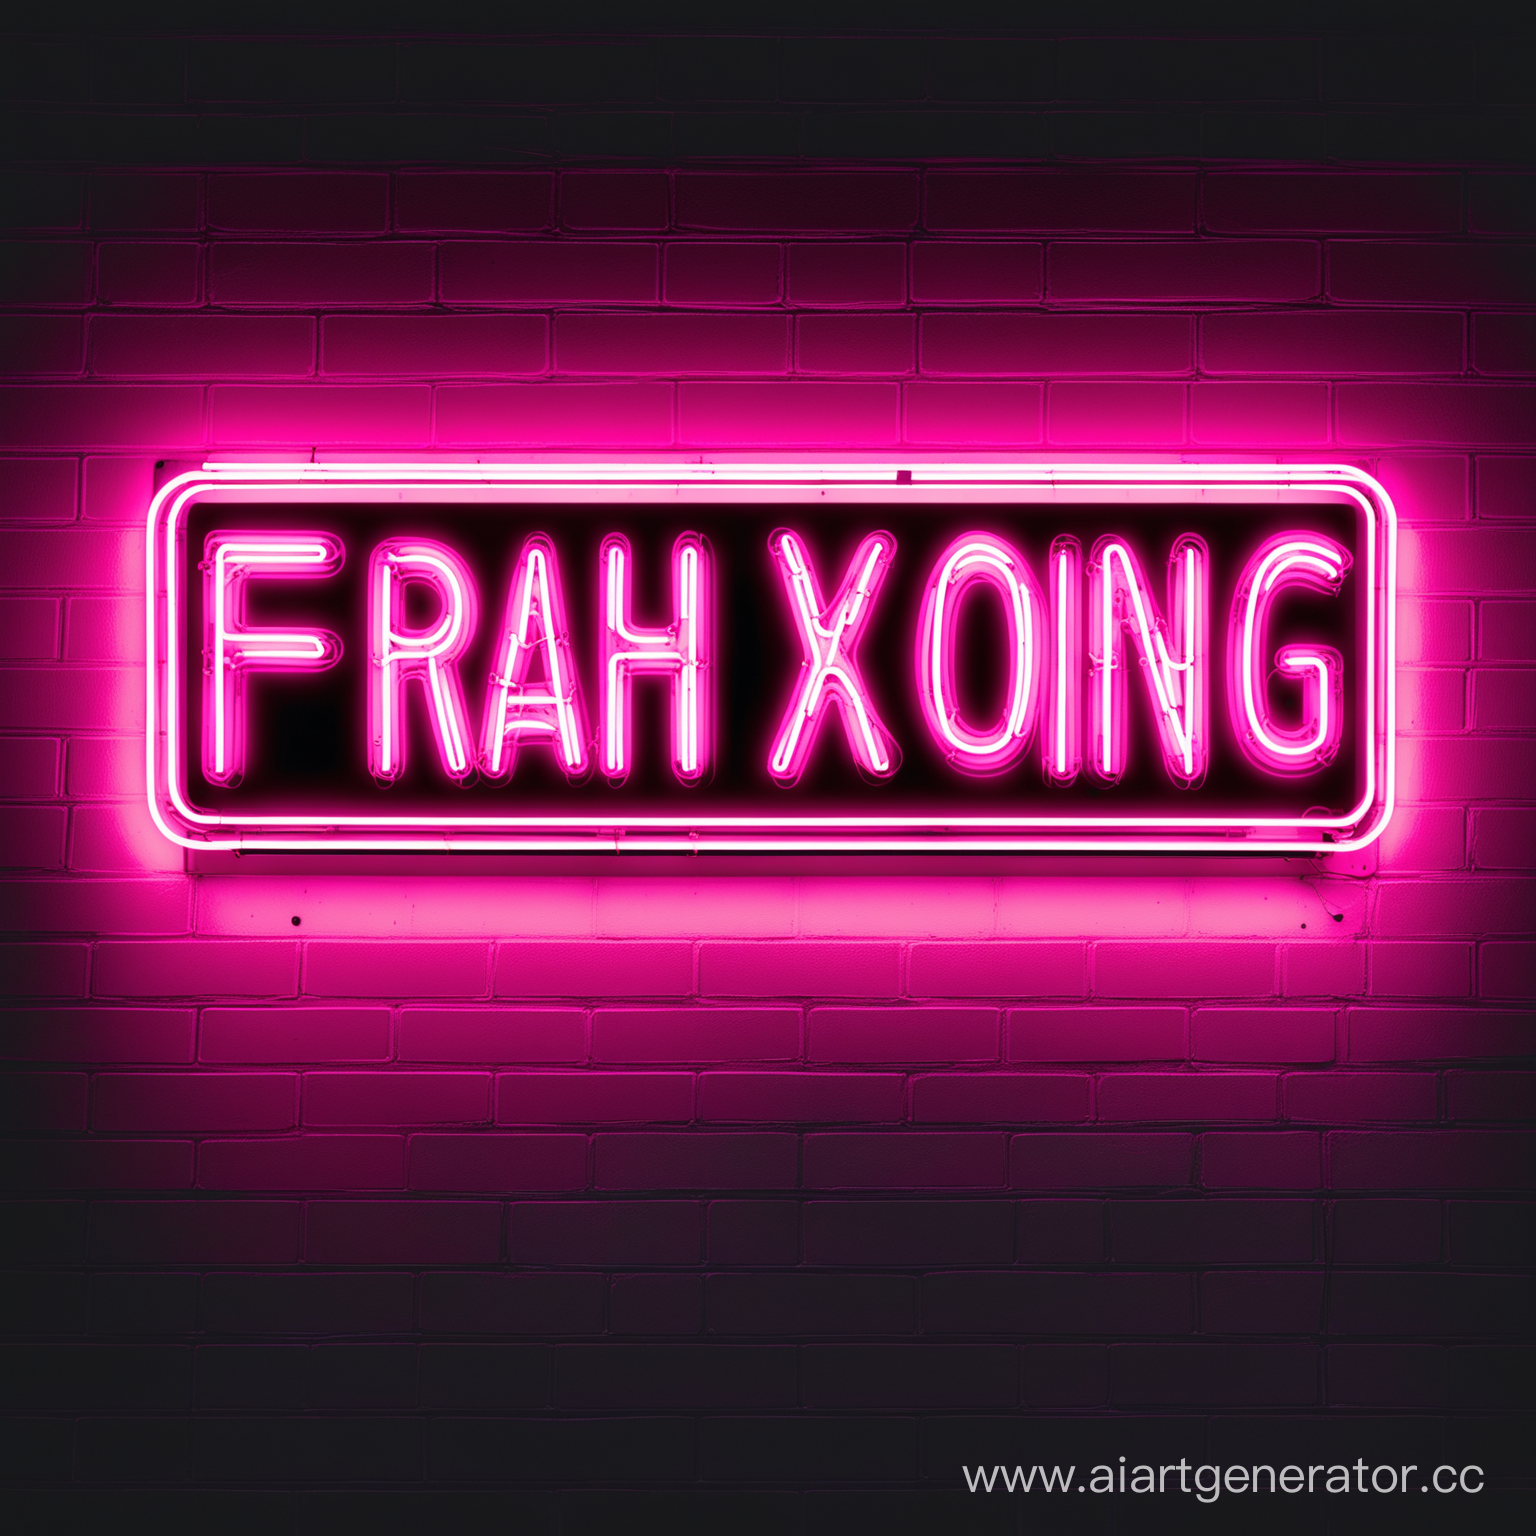 Неоновая вывеска с названием "Frah Xoing"